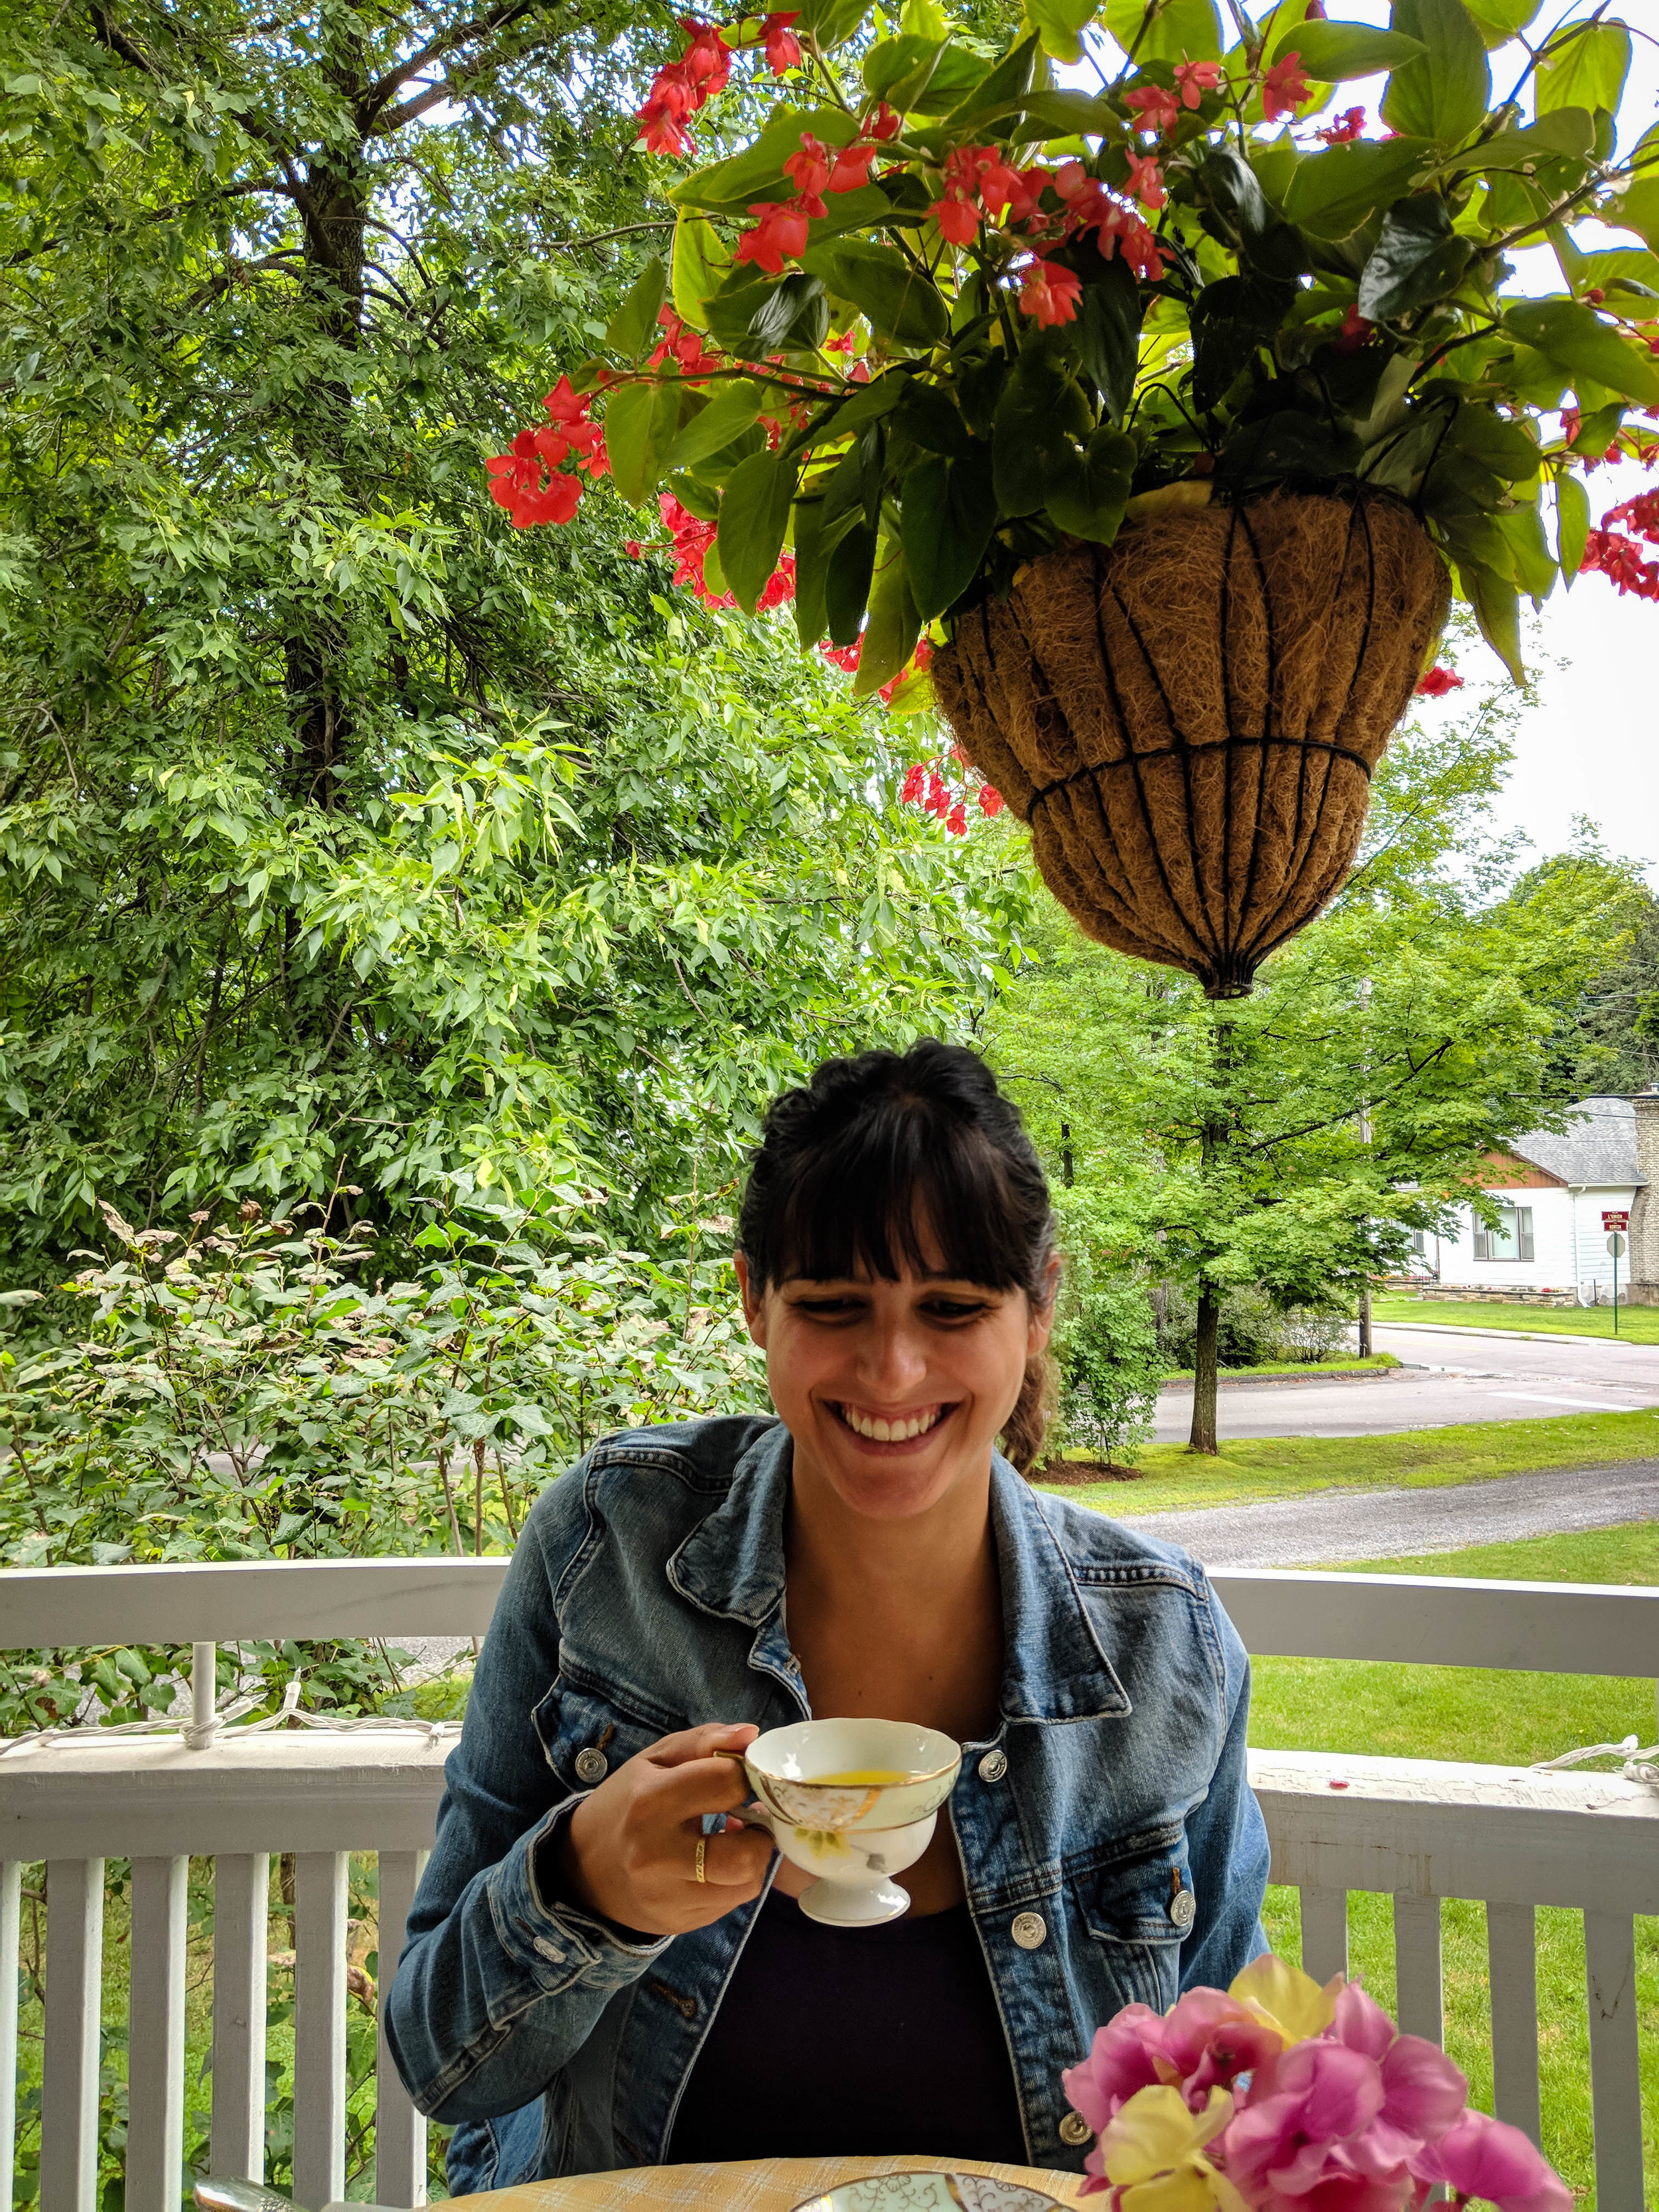 English Tea route in Quebec, Coaticook